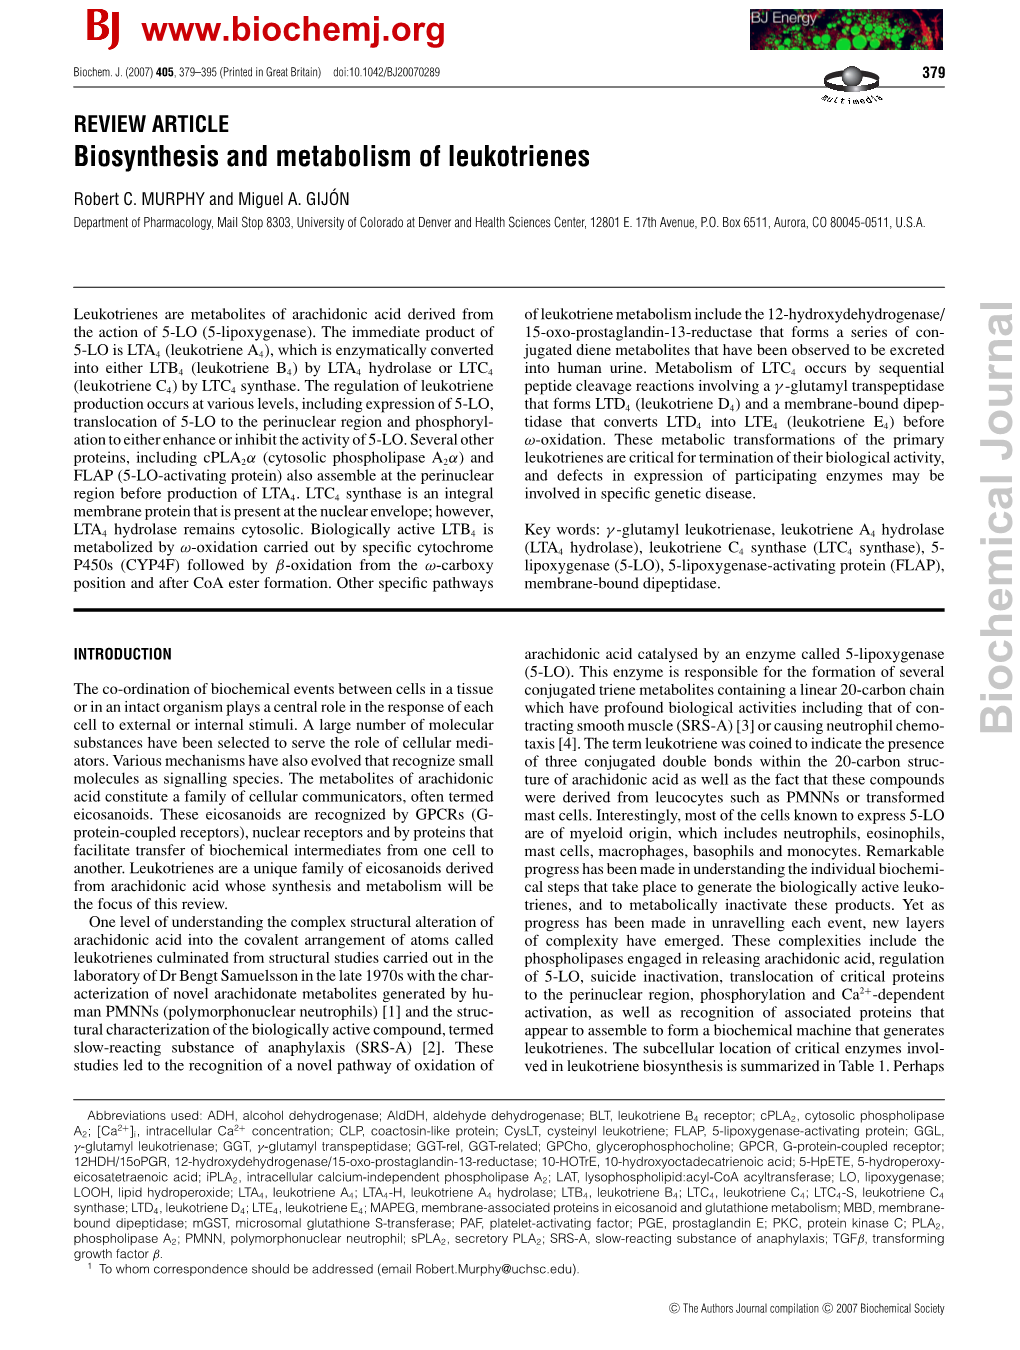 Biosynthesis and Metabolism of Leukotrienes